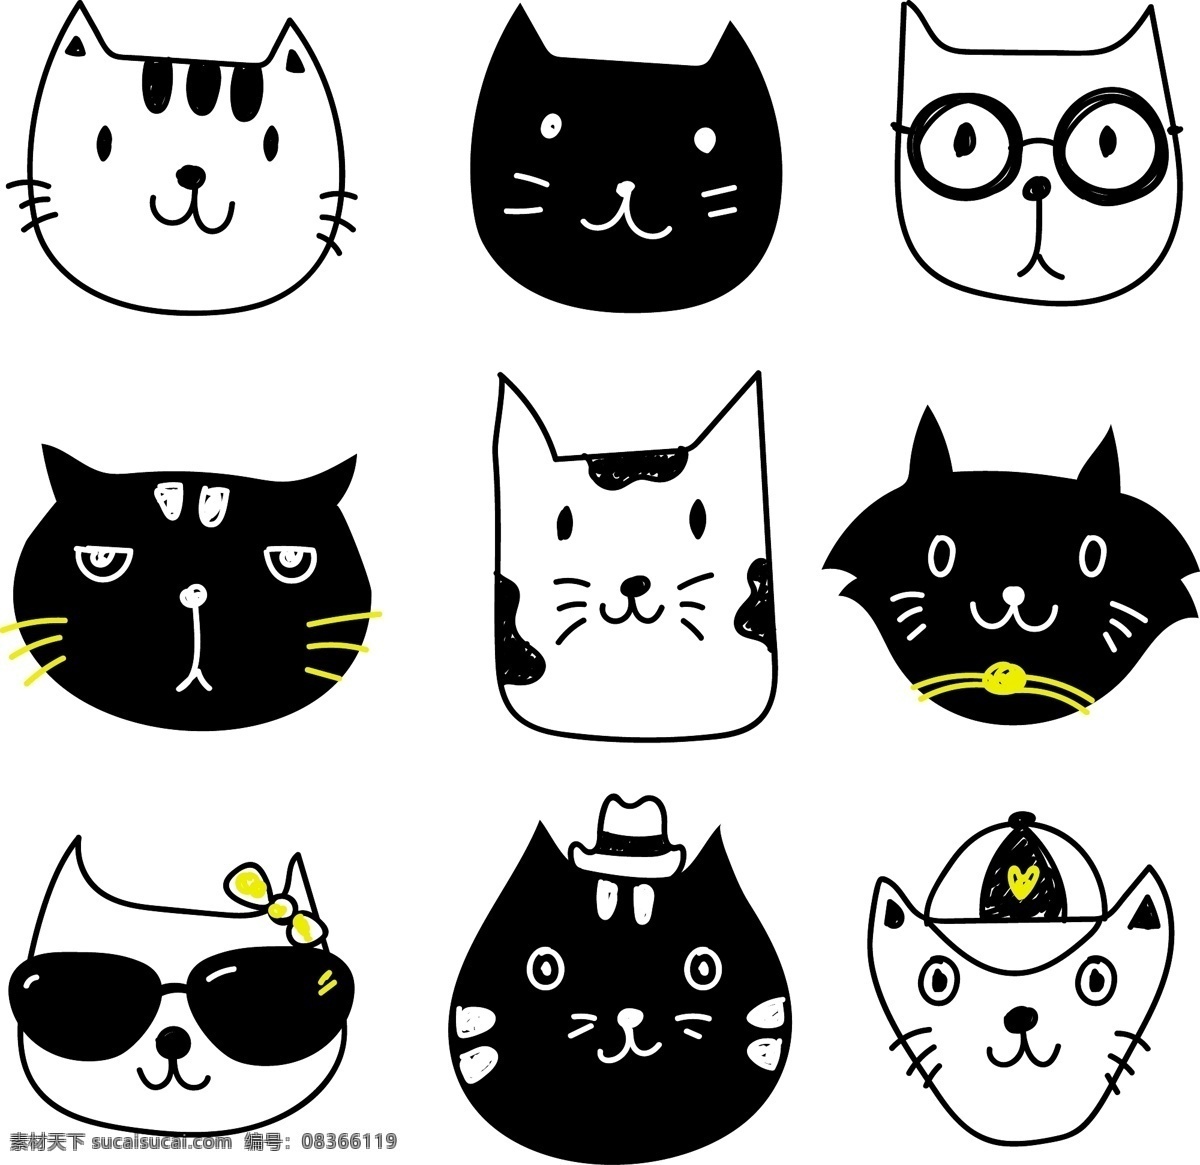 组 黑白 猫 可爱 头像 卡通 卡哇伊 矢量素材 动物 小动物 创意设计 简约 创意 元素 生物元素 动物元素